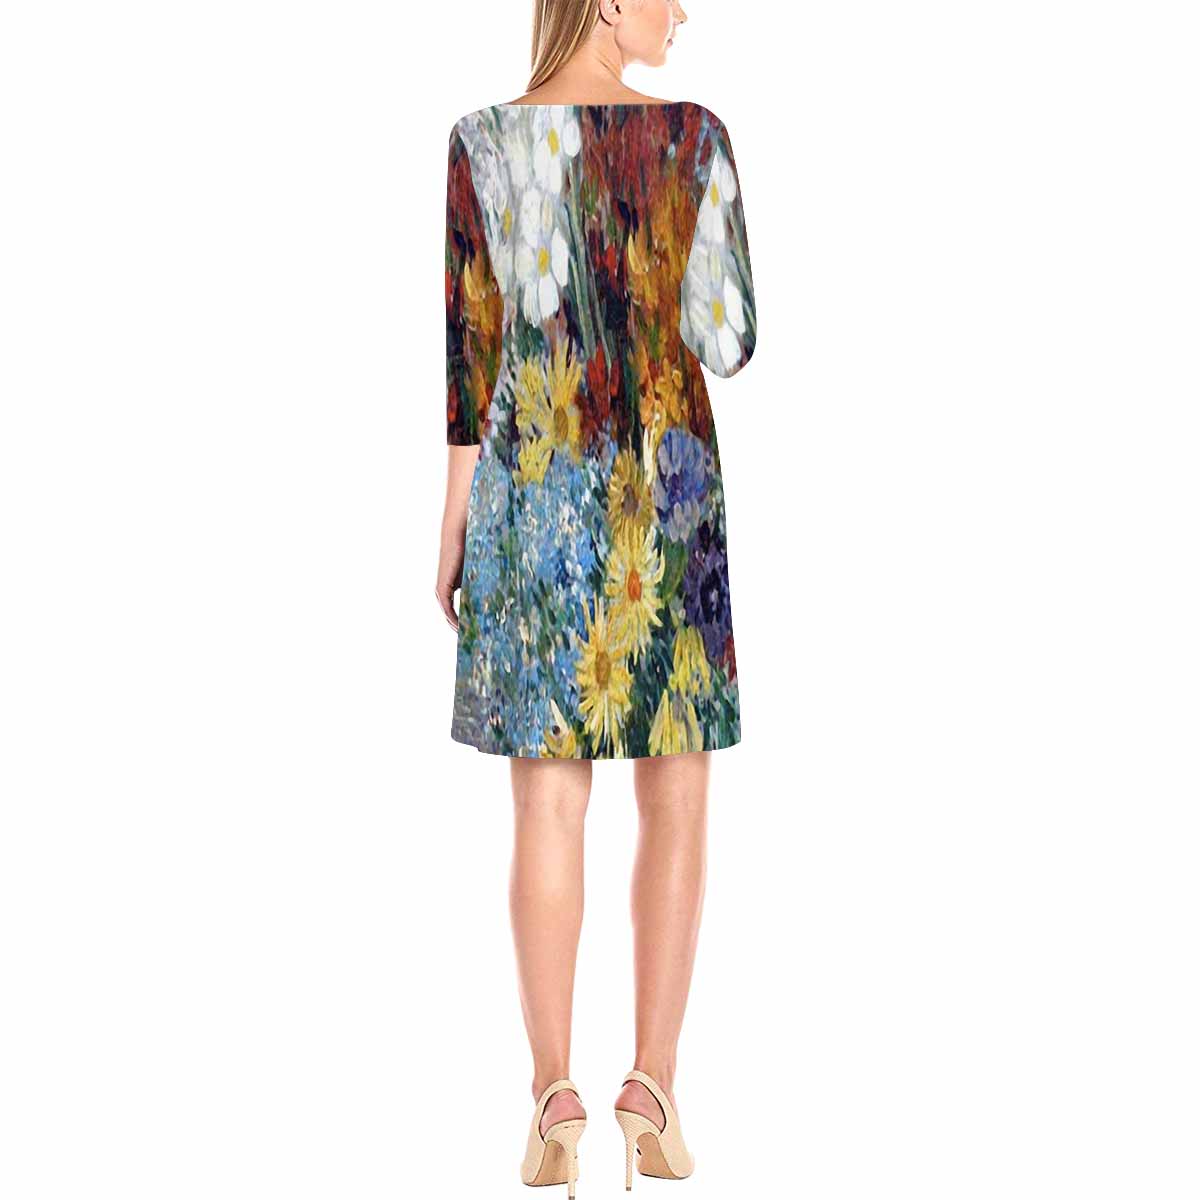 Vintage floral loose dress, model D29532 Design 41